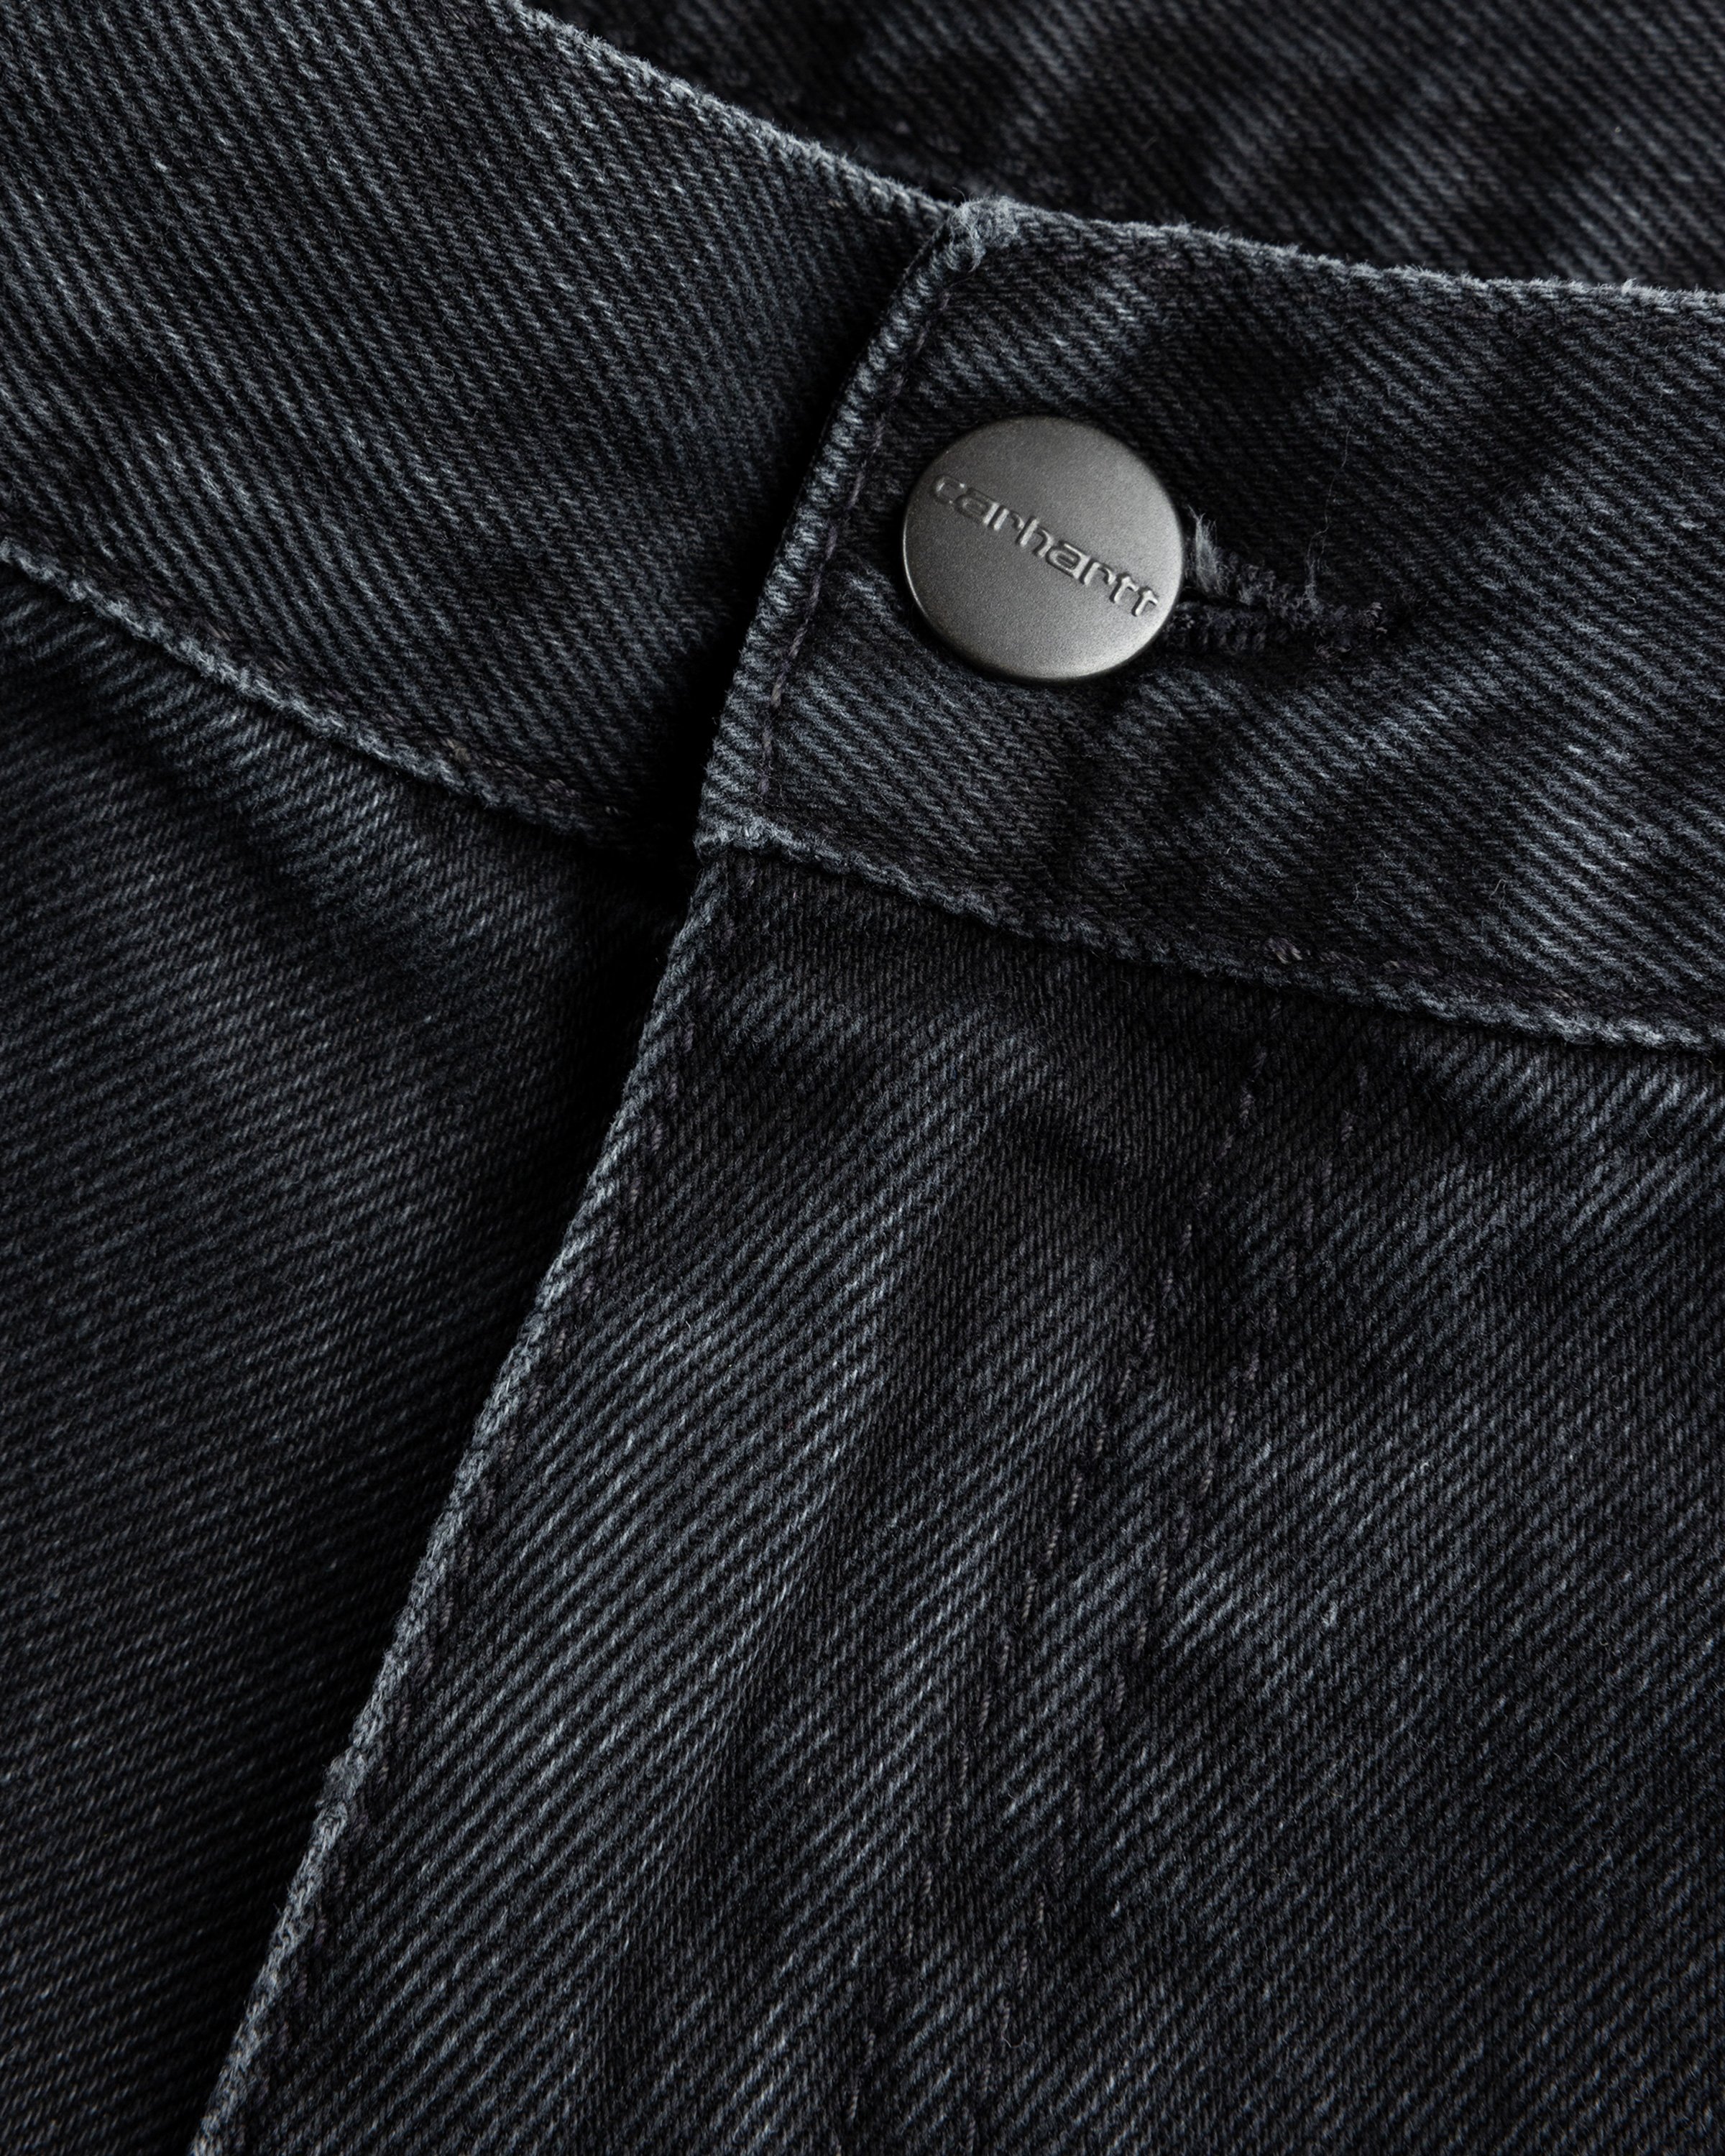 Carhartt WIP - Landon Short Black /stone washed - Clothing - Black - Image 5